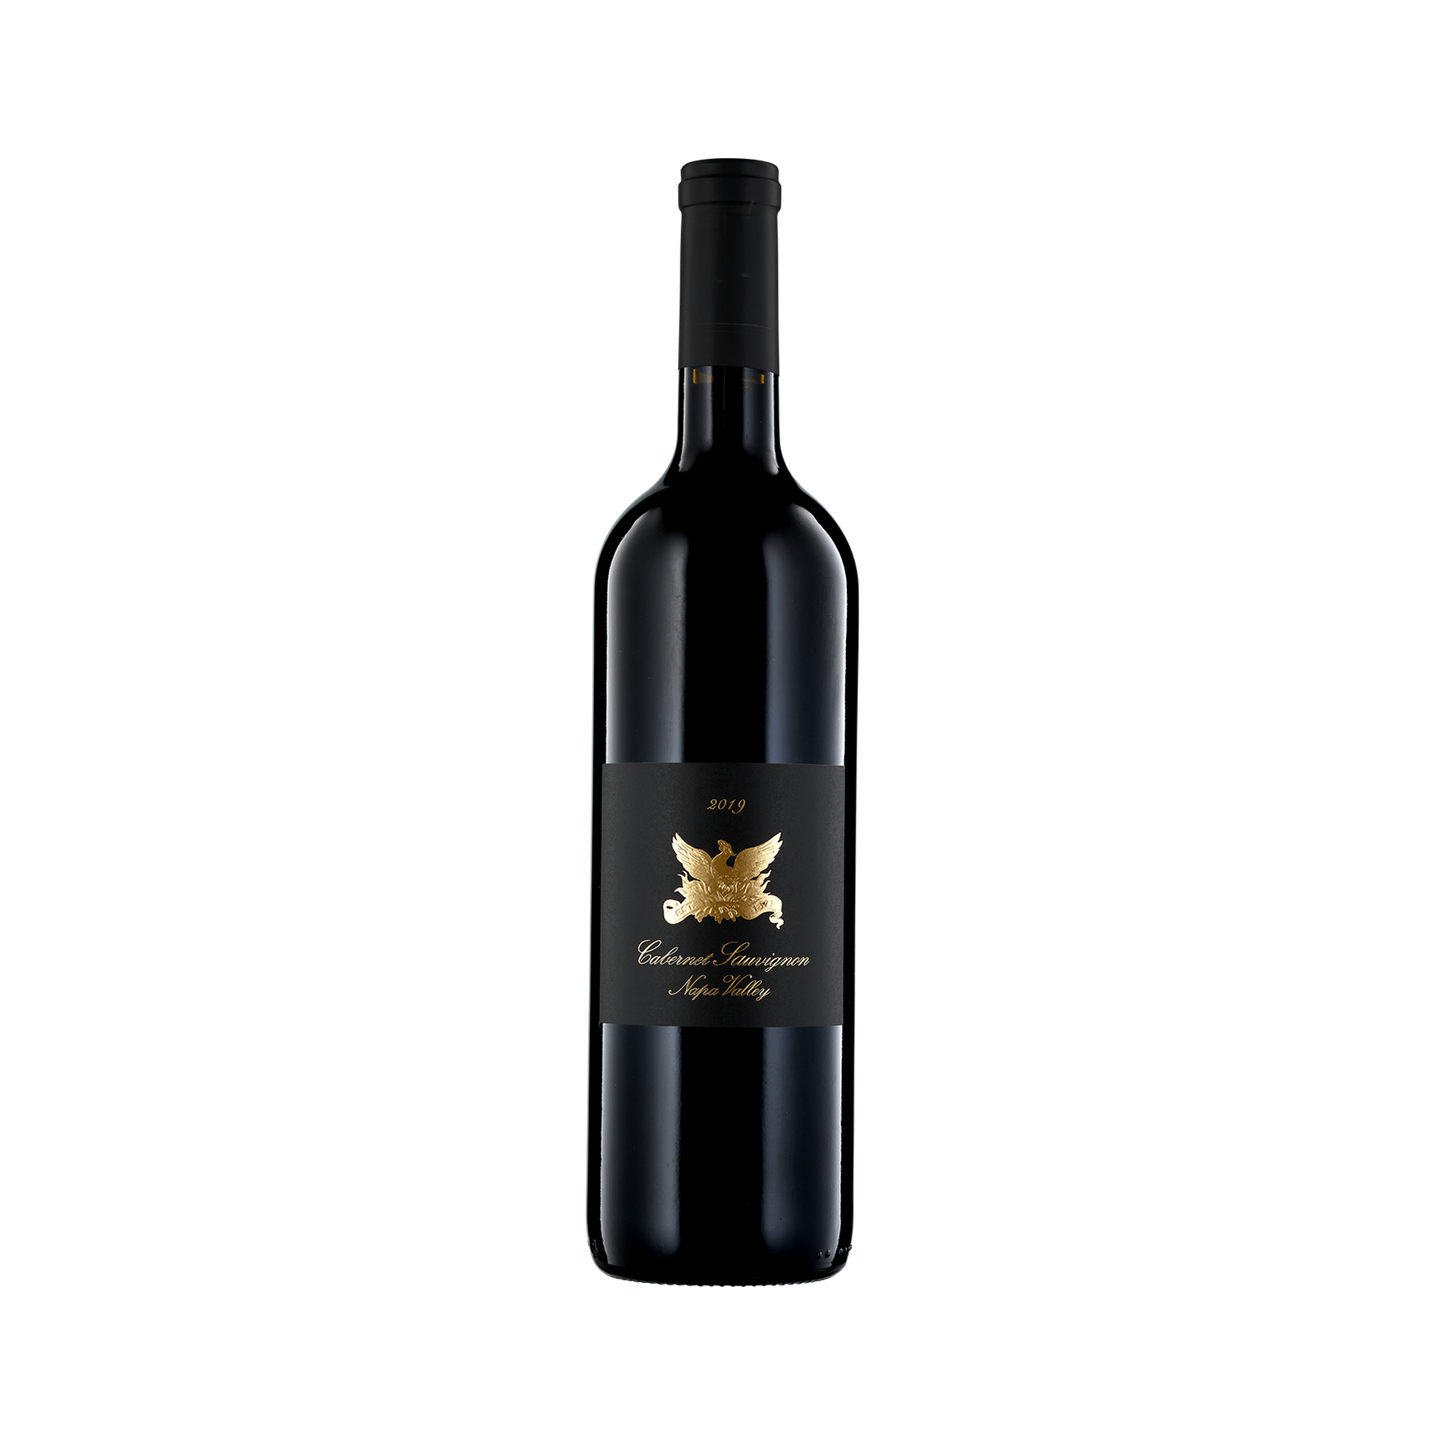 A bottle of Vine Cliff 2019 Cabernet Sauvignon